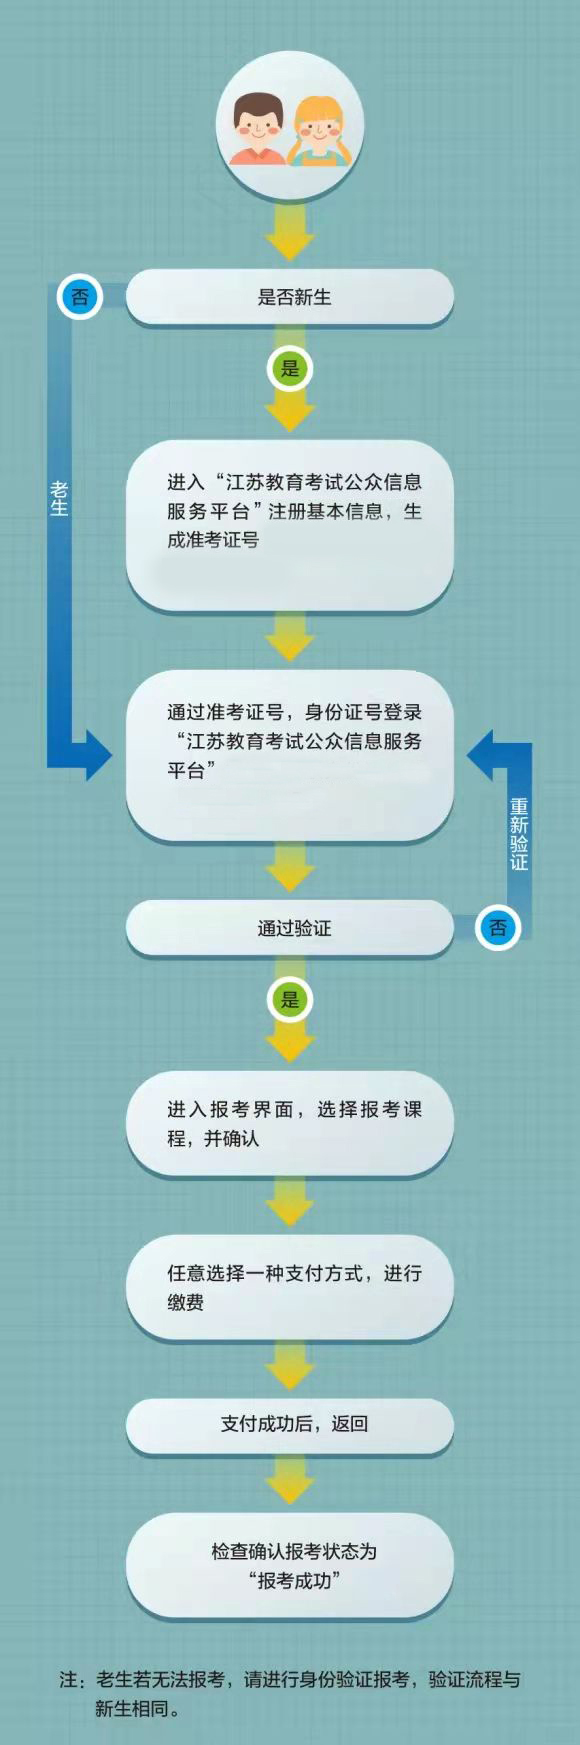 江苏省高等教育自学考试网上报名流程图